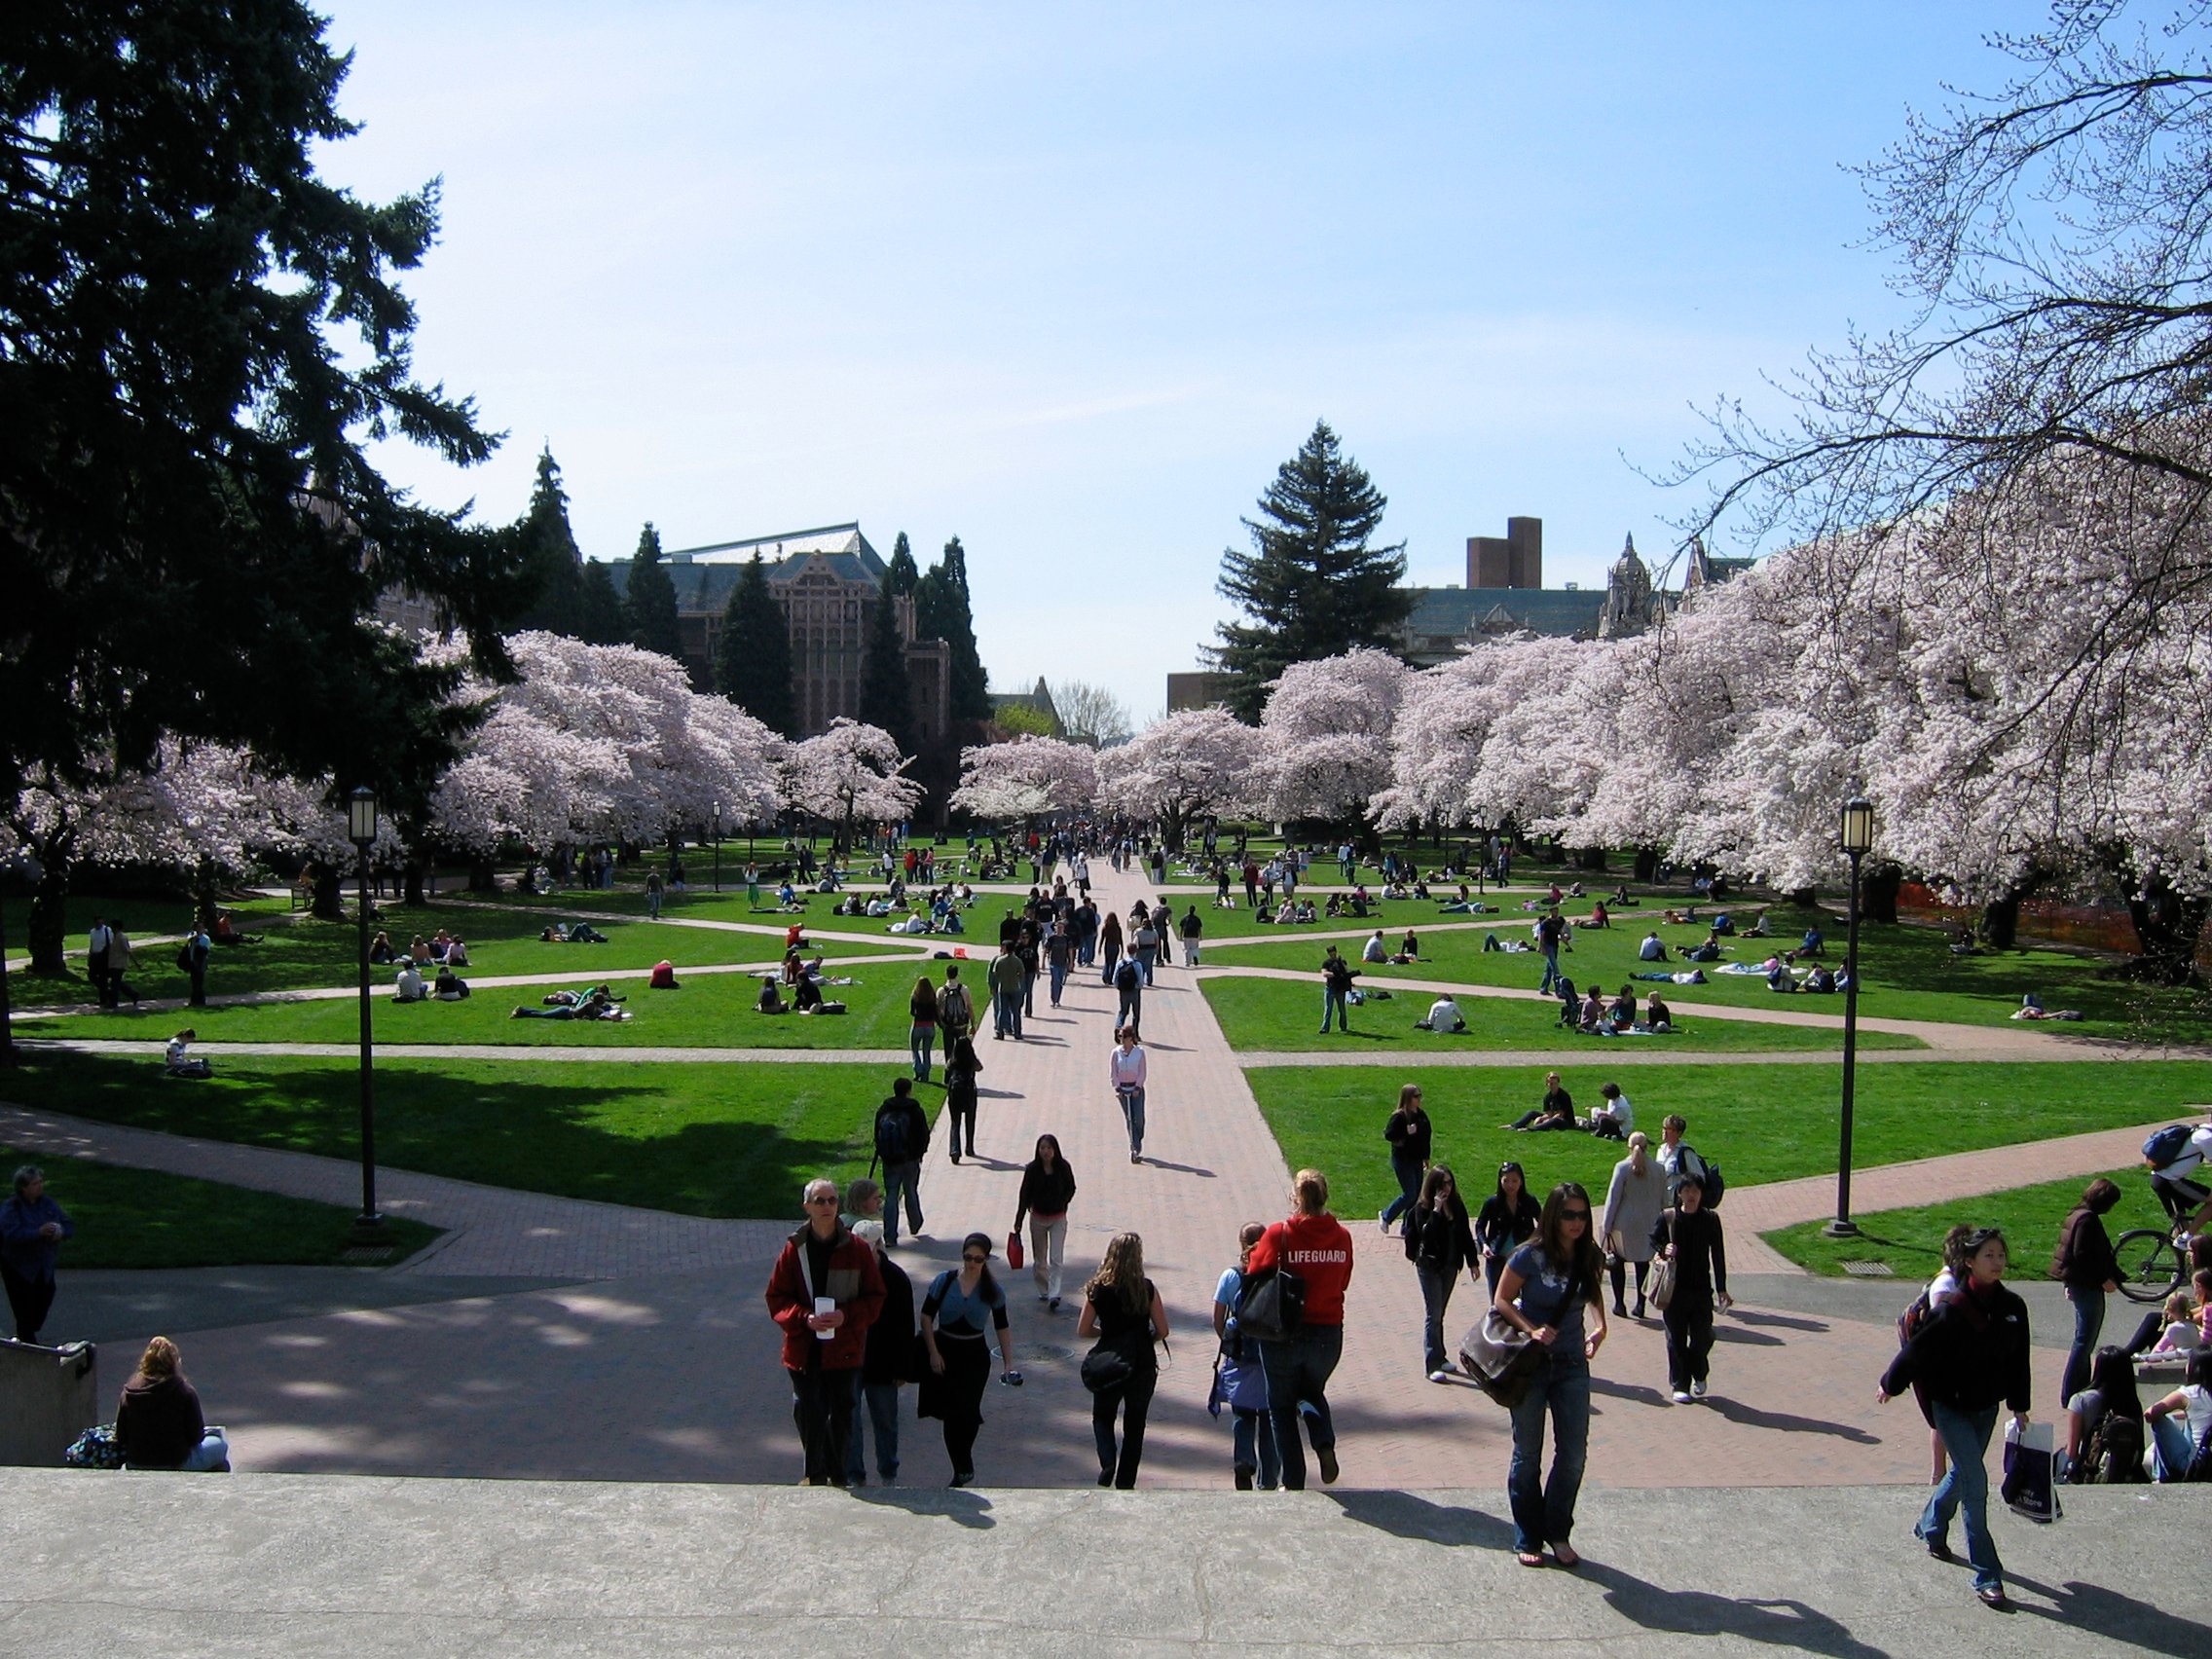 University of Washington, Seattle